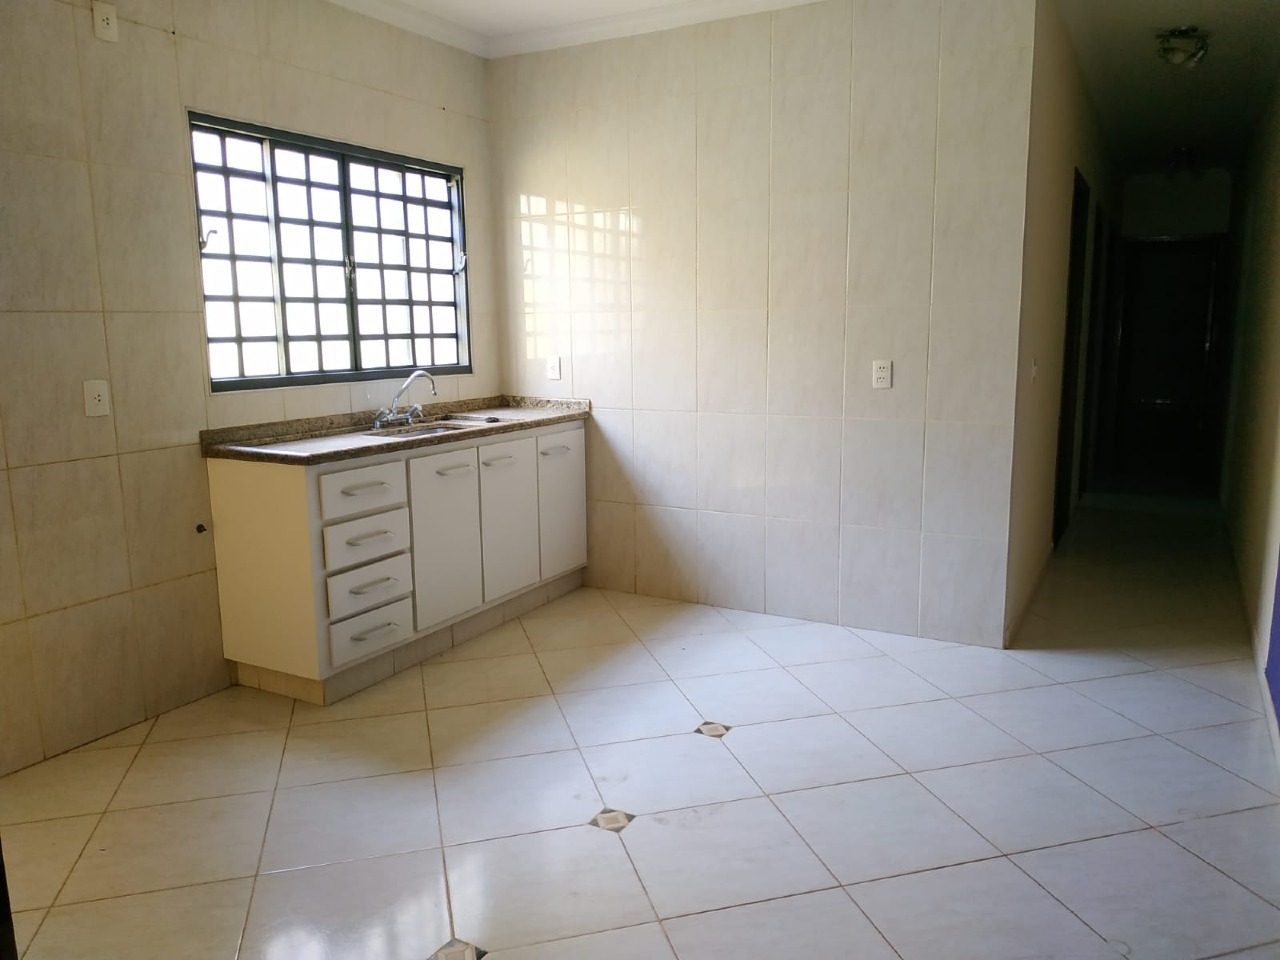 Casa para alugar, 3 quartos, 1 suíte, 2 vagas, no bairro Santa Maria em Rio das Pedras - SP